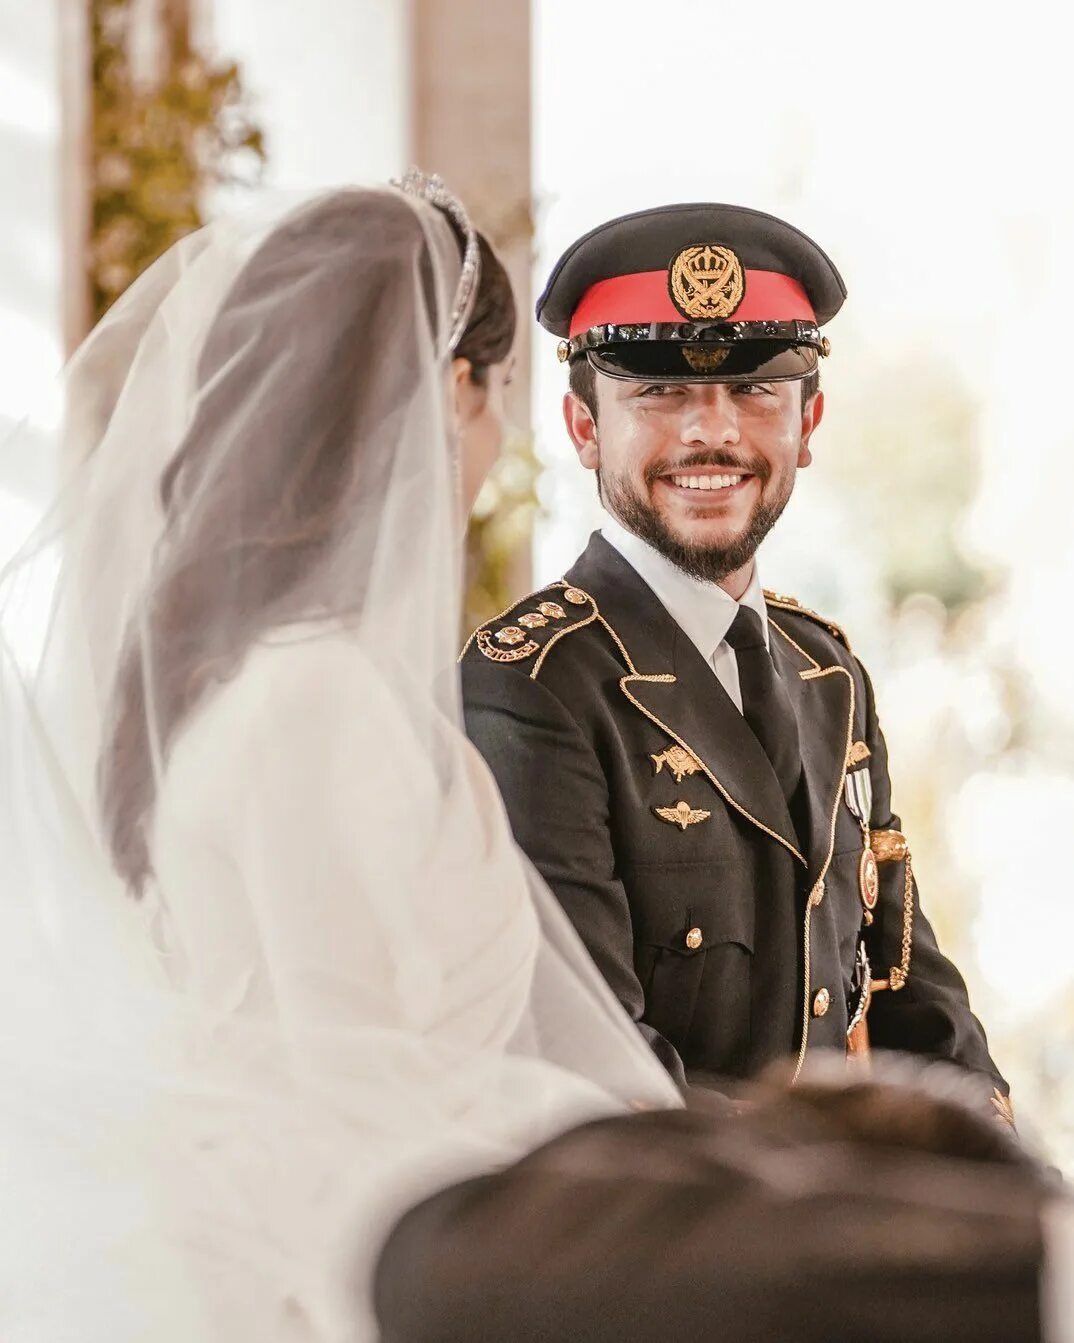 Аль бин аль хусейн. Свадьба в Иордании наследного принца. Свадьба наследного принца Иордании Хусейна. Кронпринц Иордании Хусейн. Мисс Раджва Аль-Саиф.